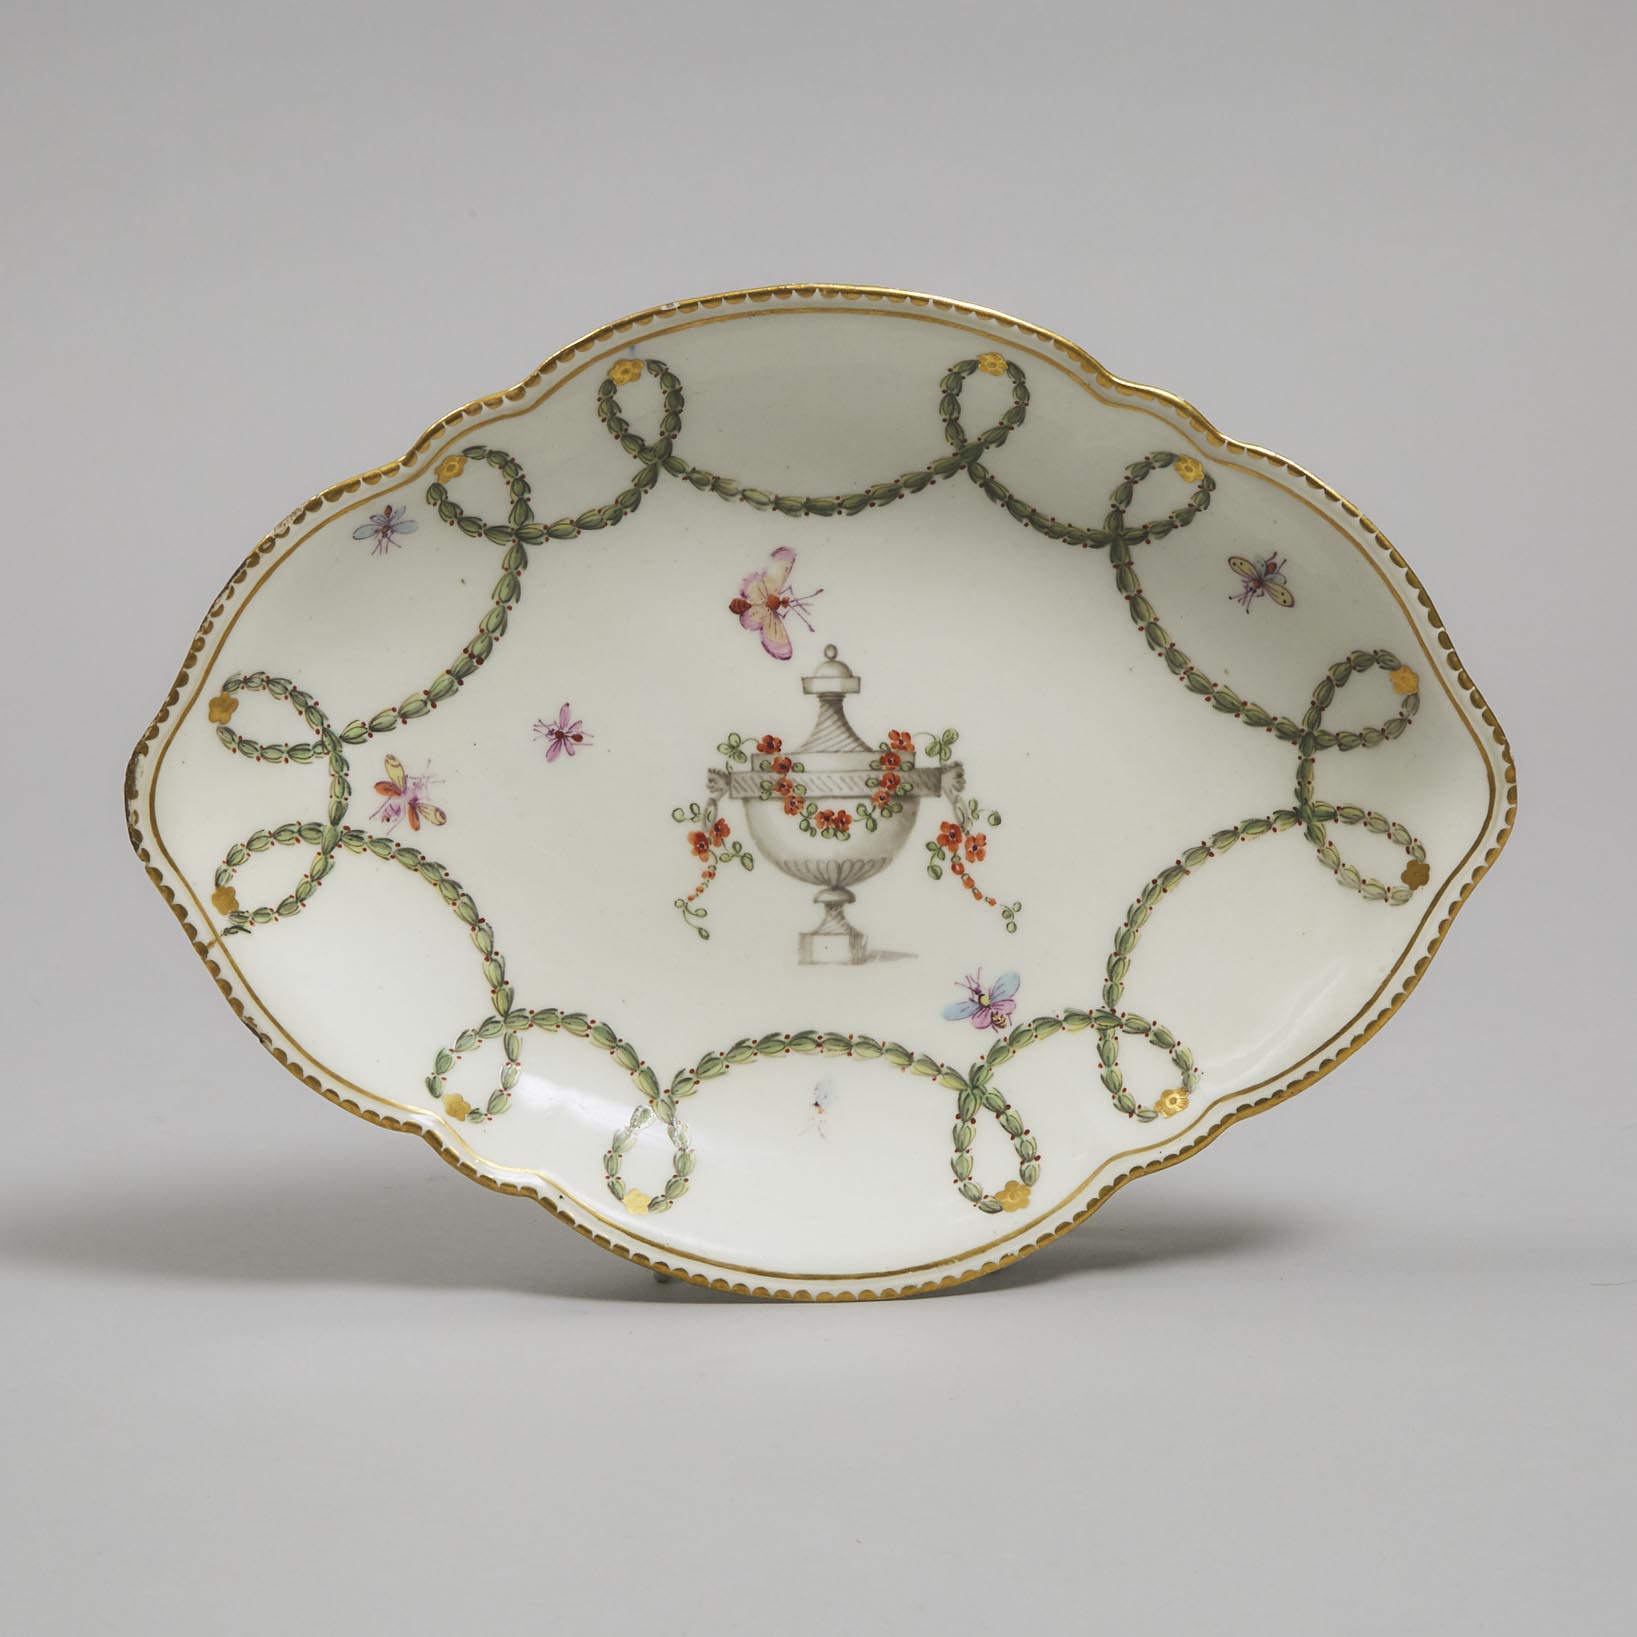 Derby Oval Dish, c.1775-80